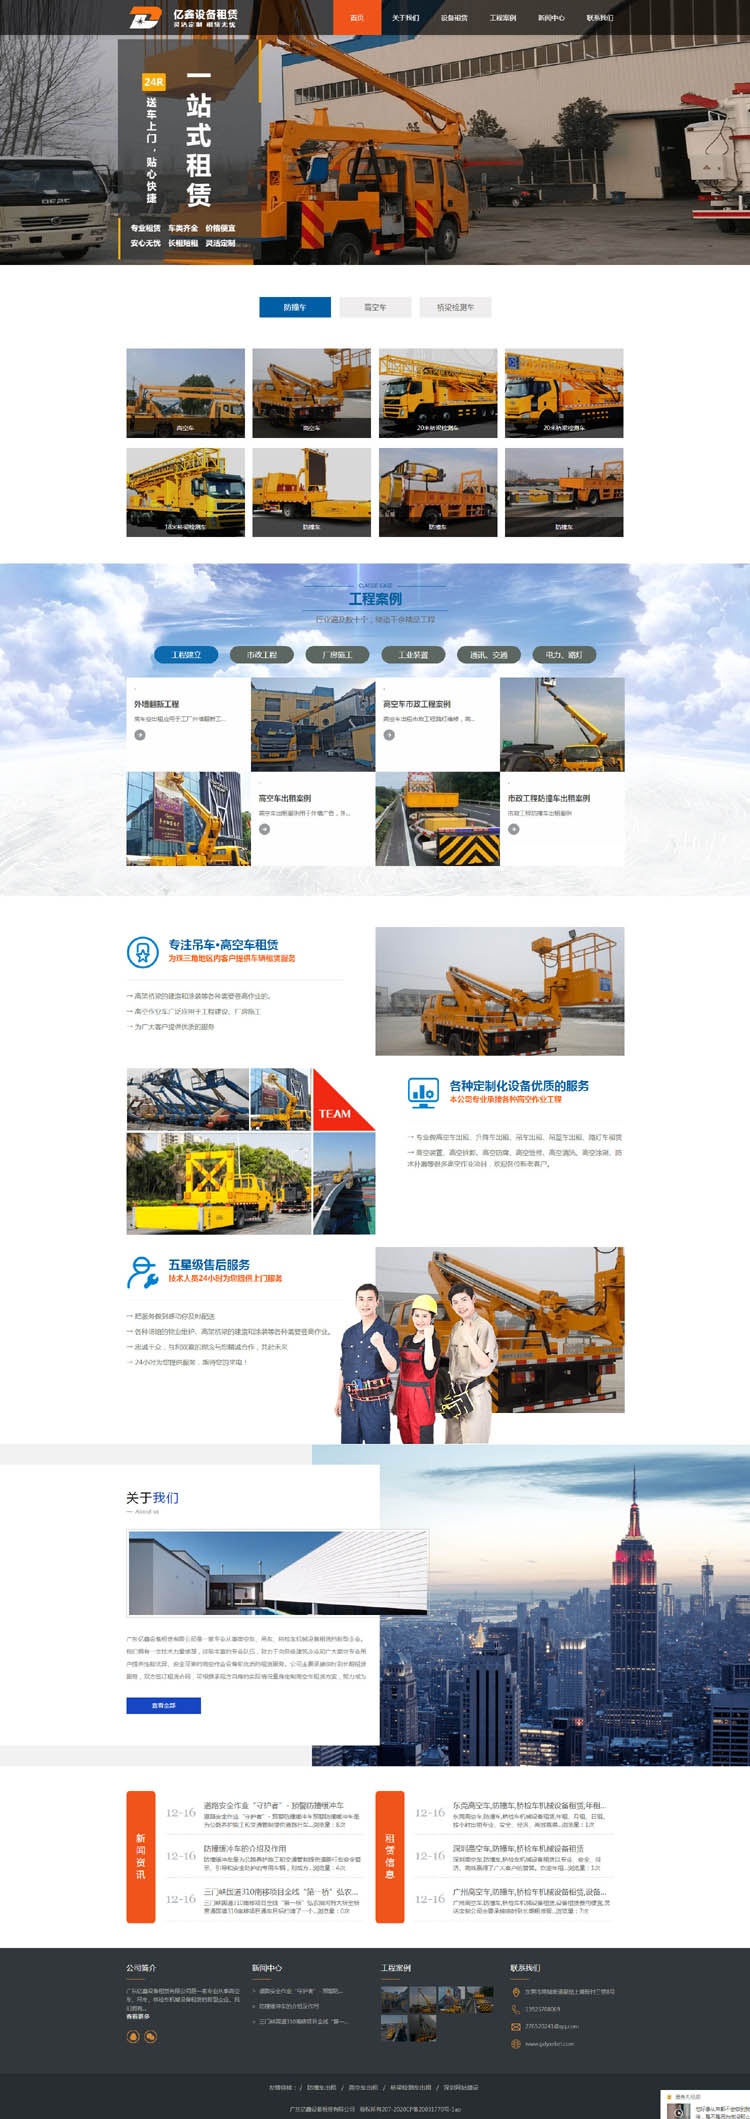 亿鑫设备租赁营销型网站建设,东莞企业网站案例 